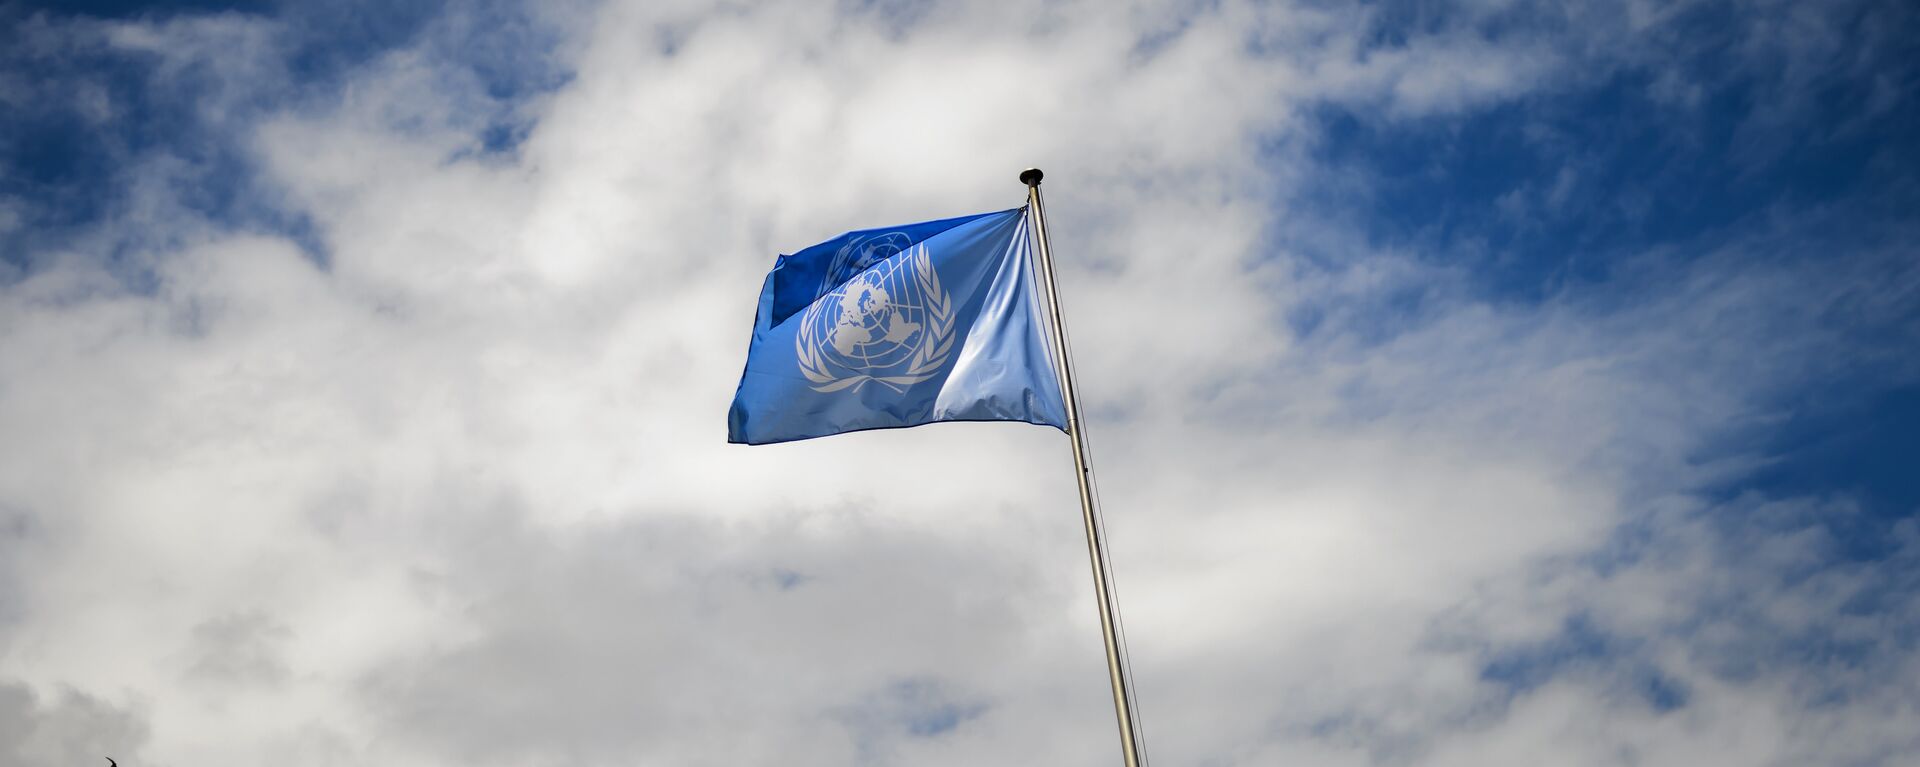 La bandera de la ONU - Sputnik Mundo, 1920, 05.04.2021